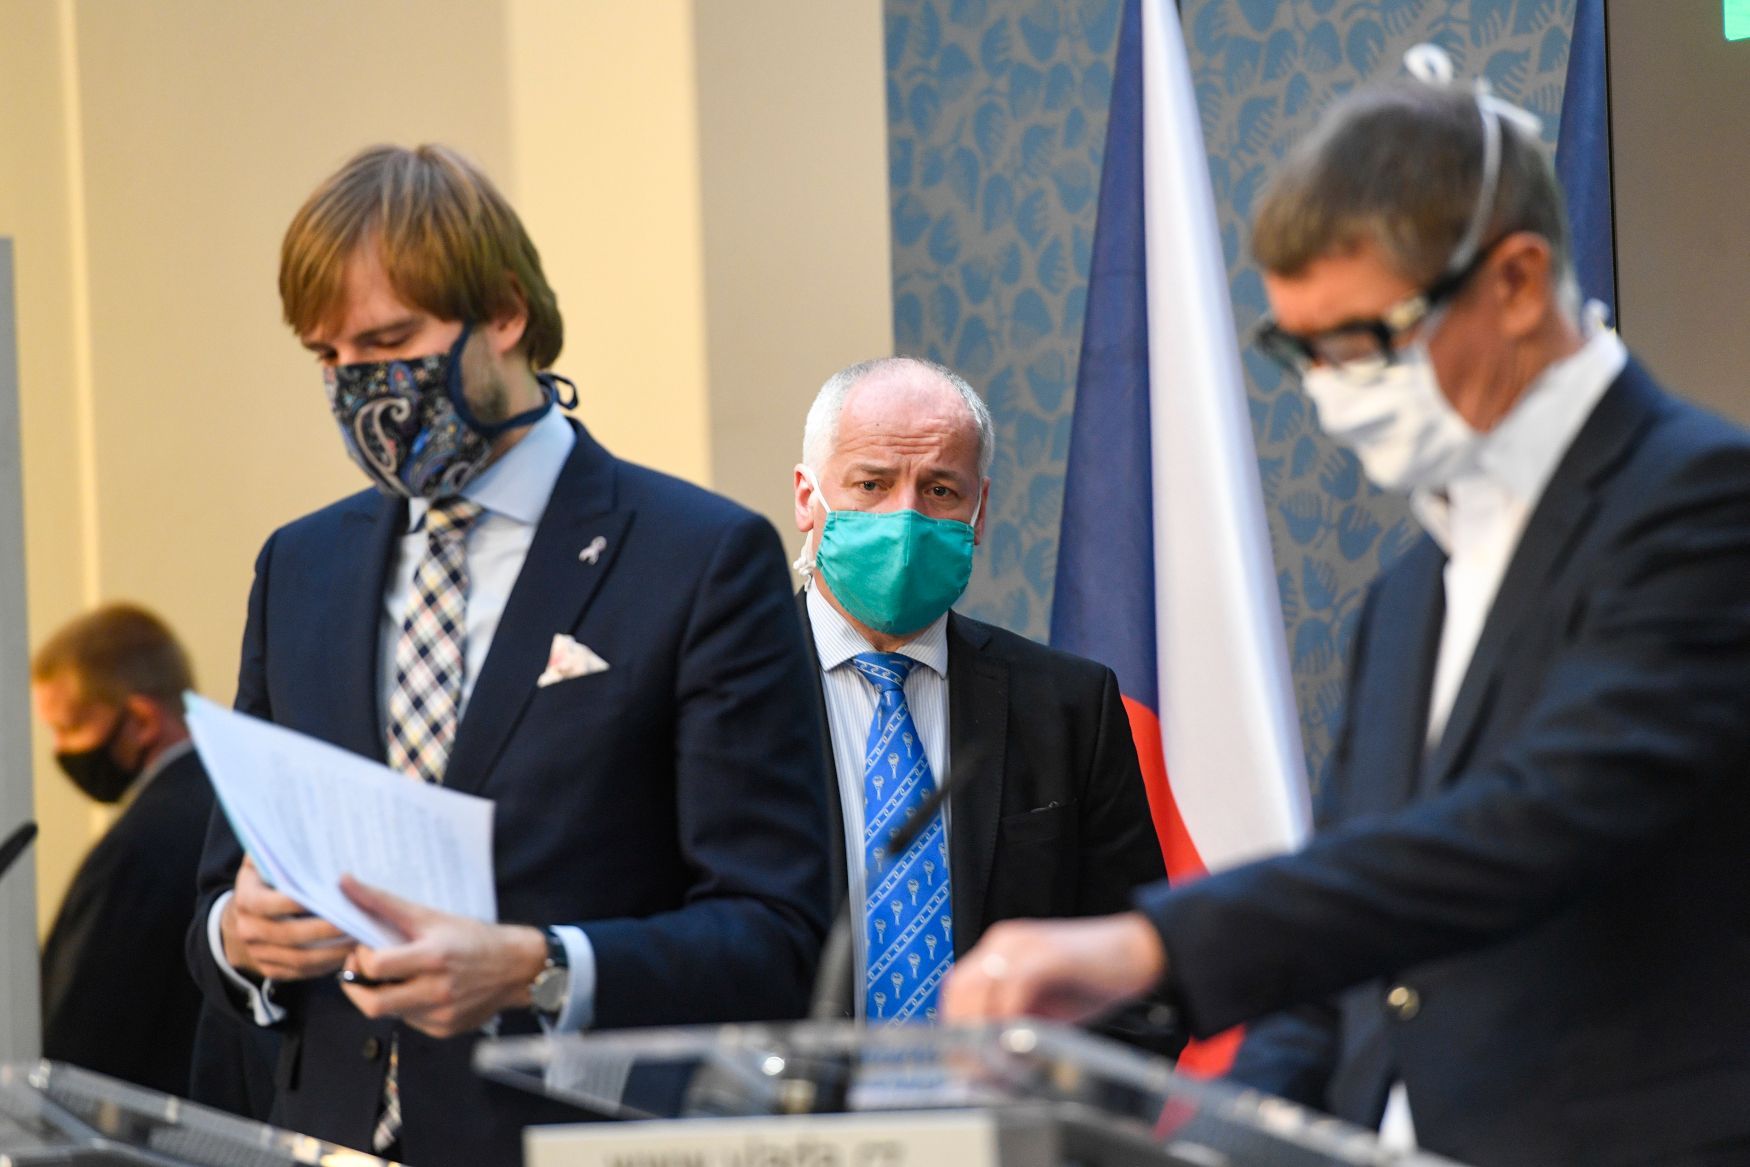 Zprava premiér Andrej Babiš (ANO), náměstek ministra zdravotnictví Roman Prymula a ministr zdravotnictví Adam Vojtěch (za ANO).